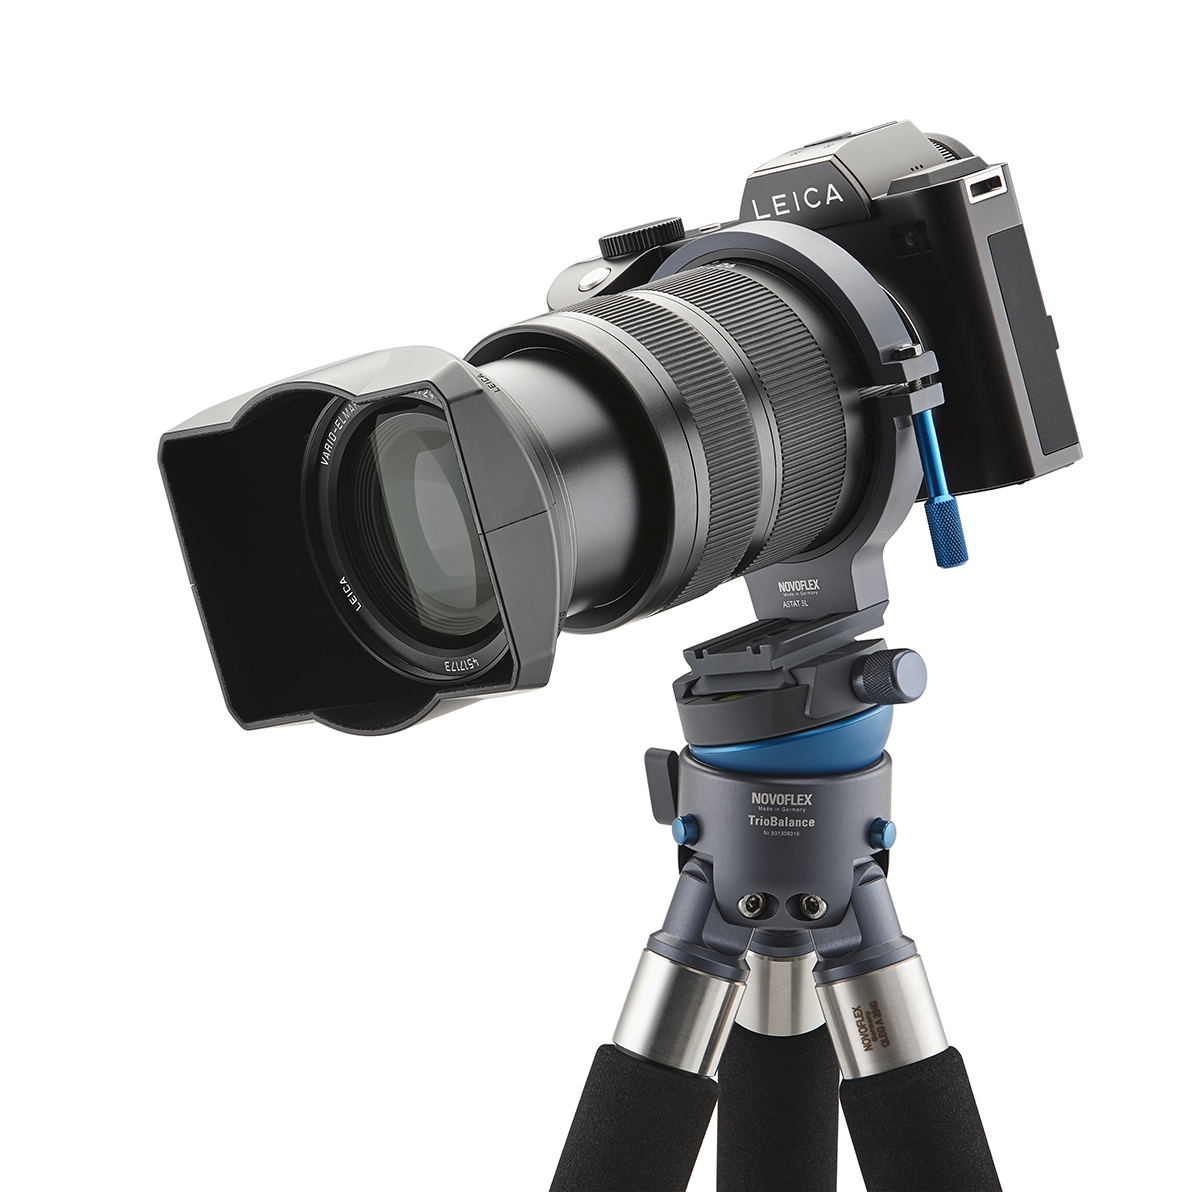 Novoflex Stativschelle für Leica SL-Objektive 24-90 und 90-280